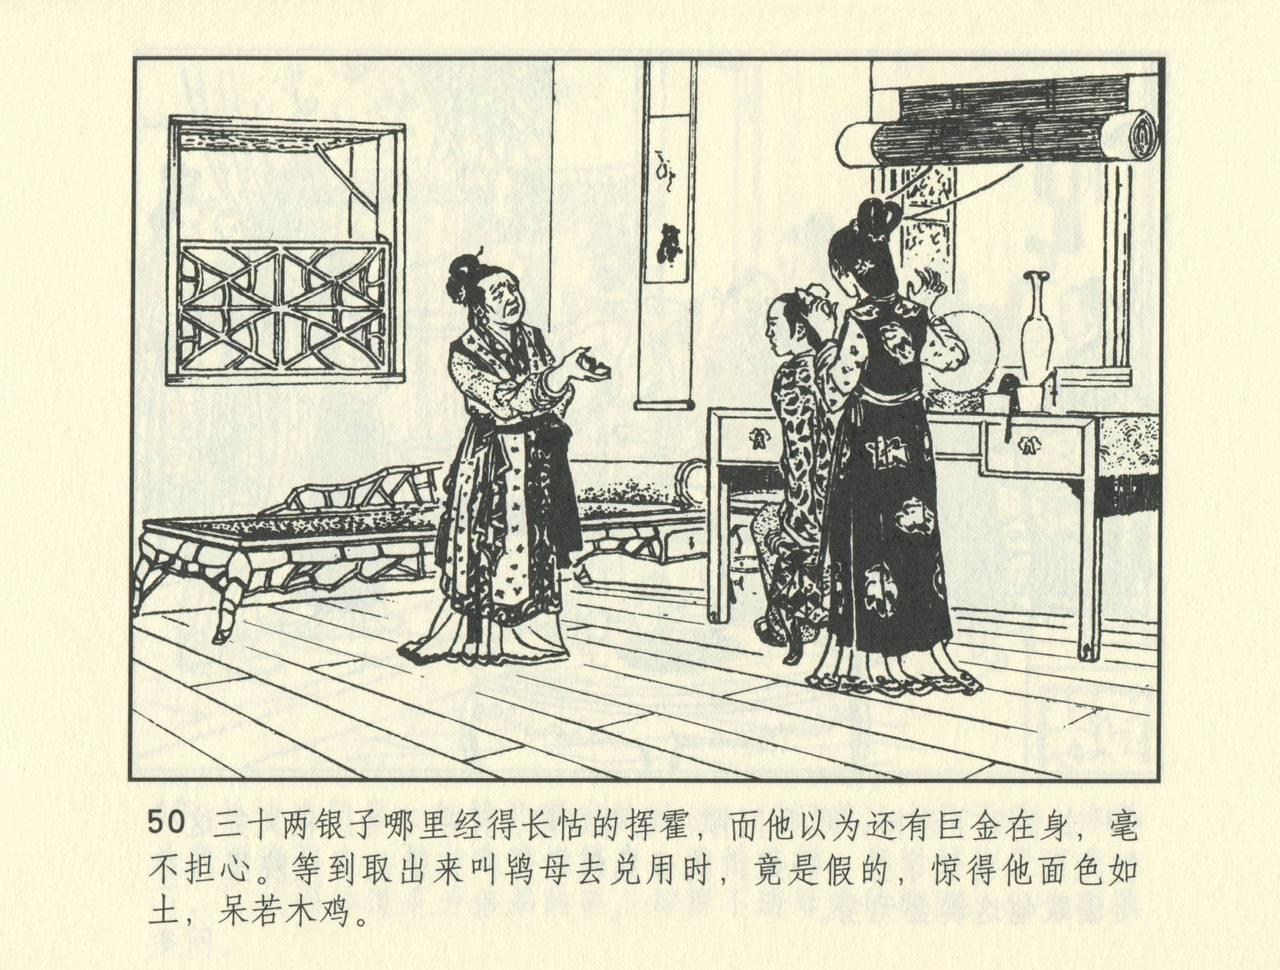 聊斋志异 张玮等绘 天津人民美术出版社 卷二十一 ~ 三十 522